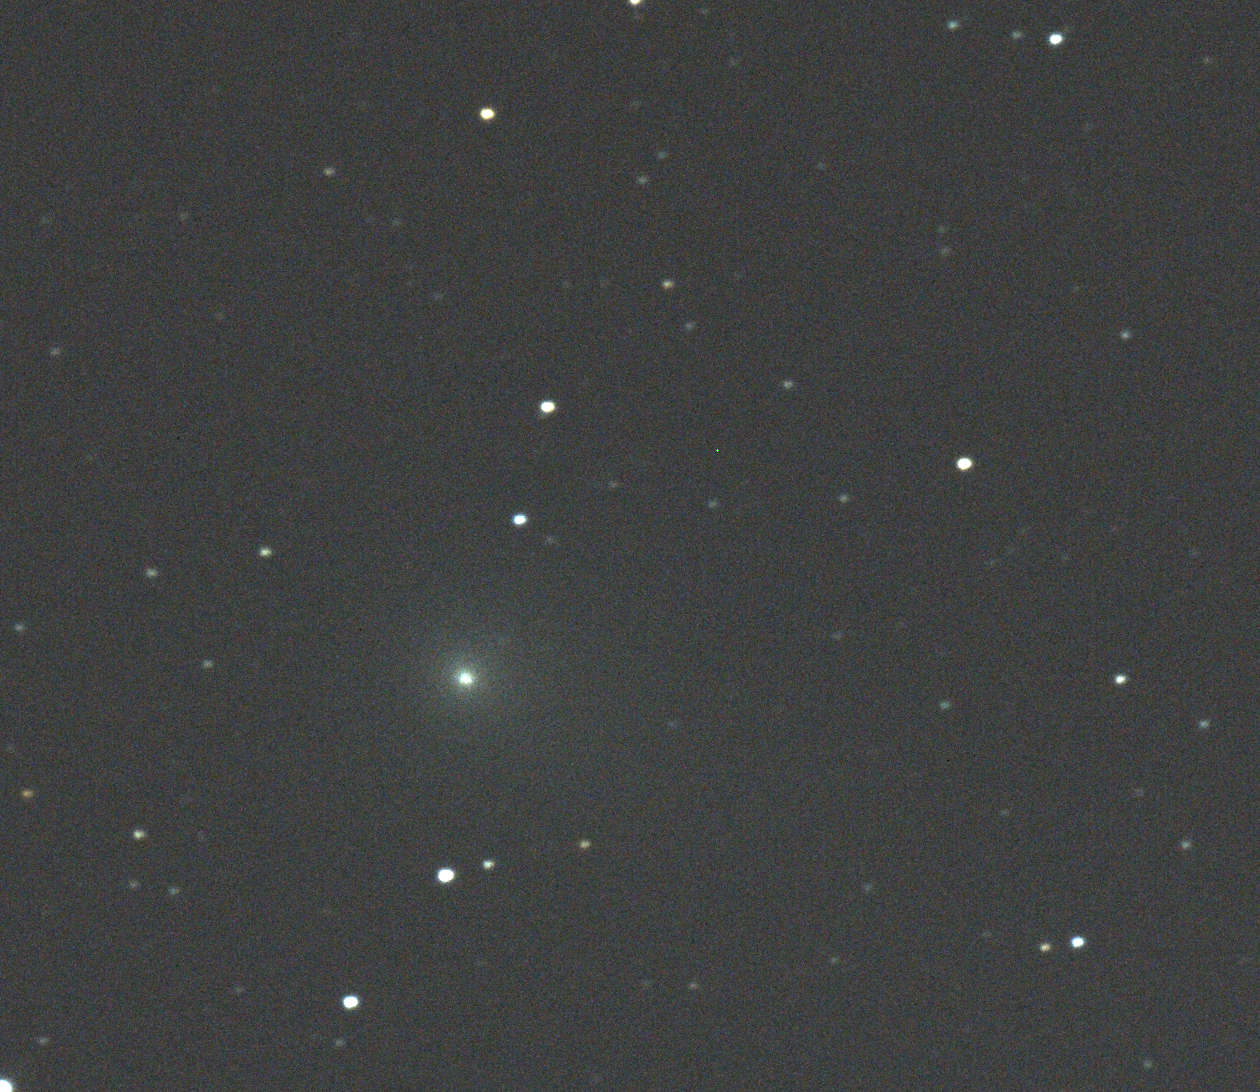 Comet Garradd C/2009 P1